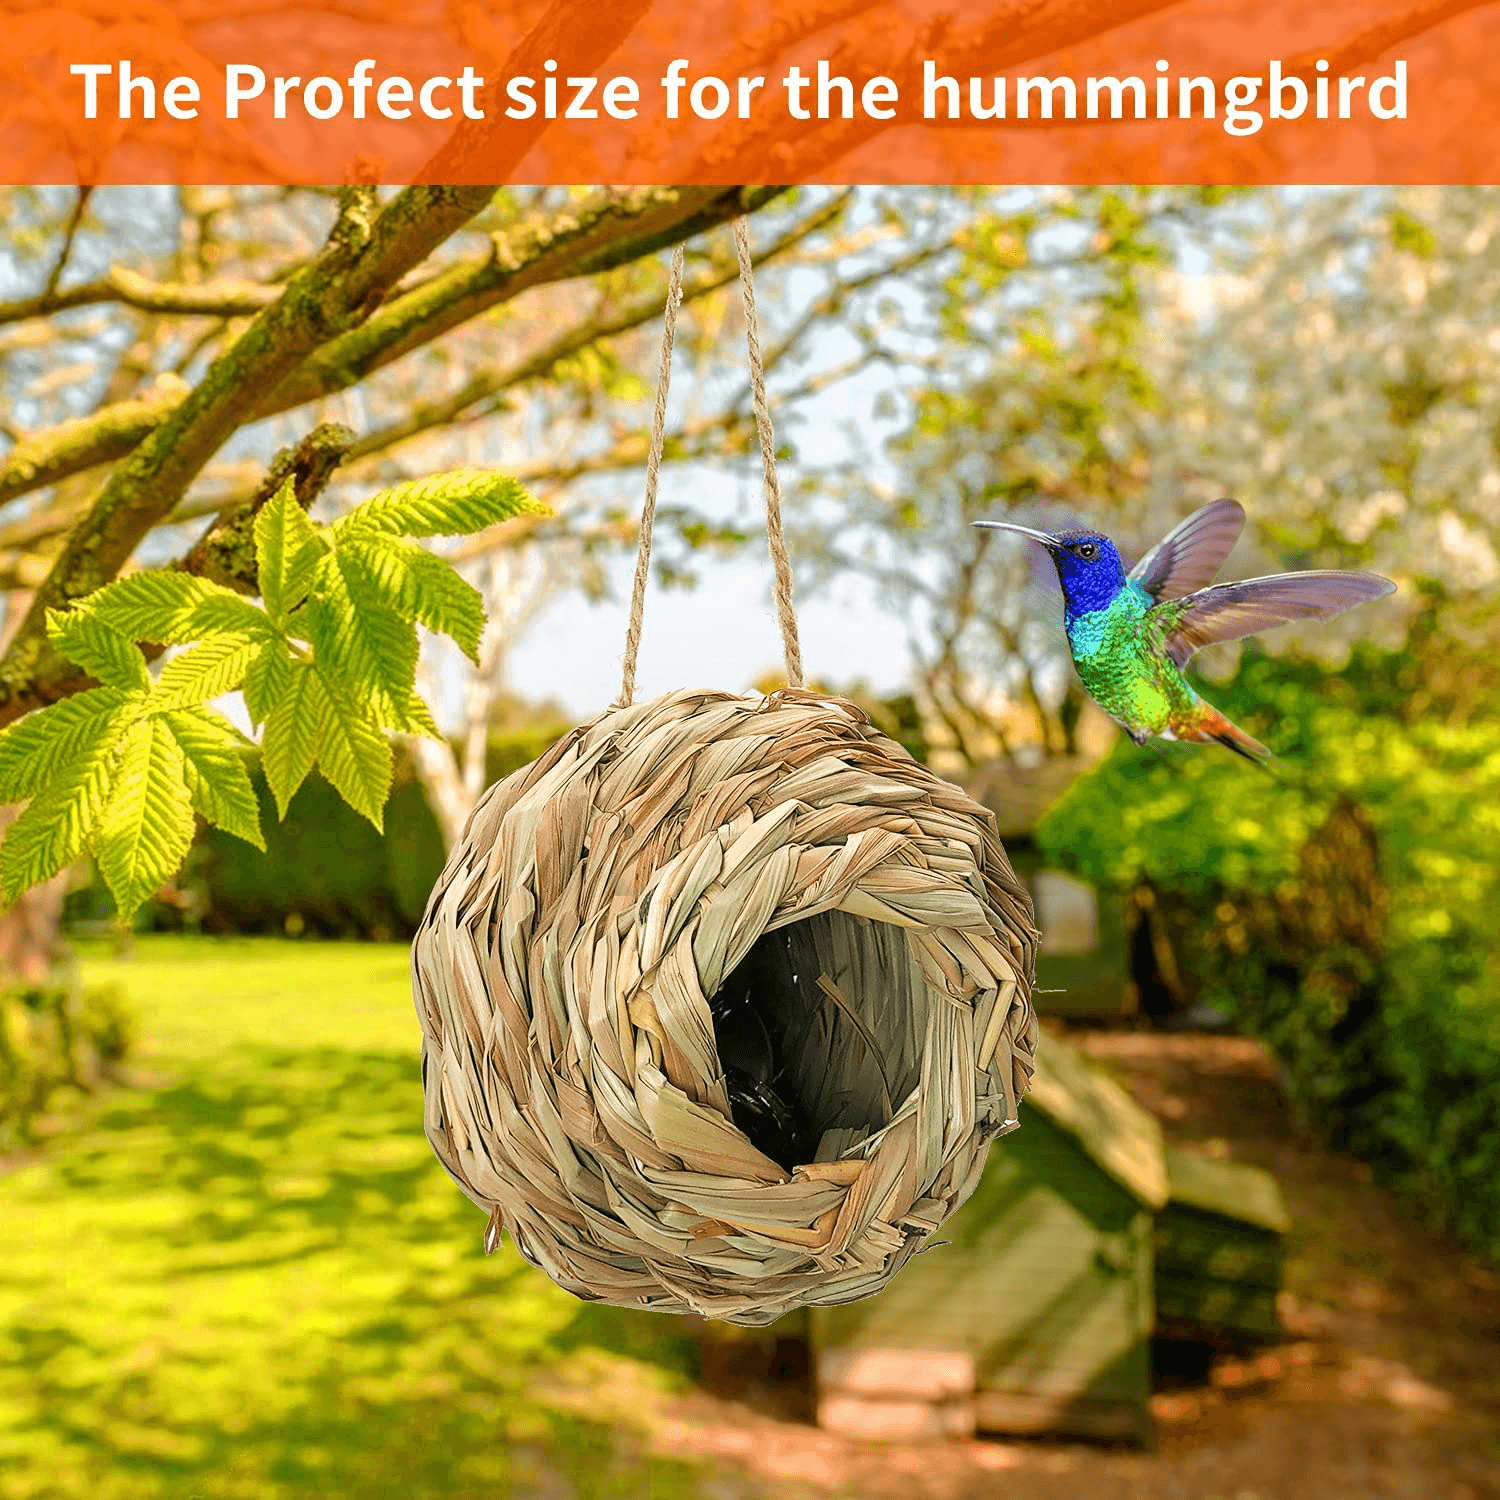 Hummingbird House Hand-Woven Natural Grass Hummingbird House For